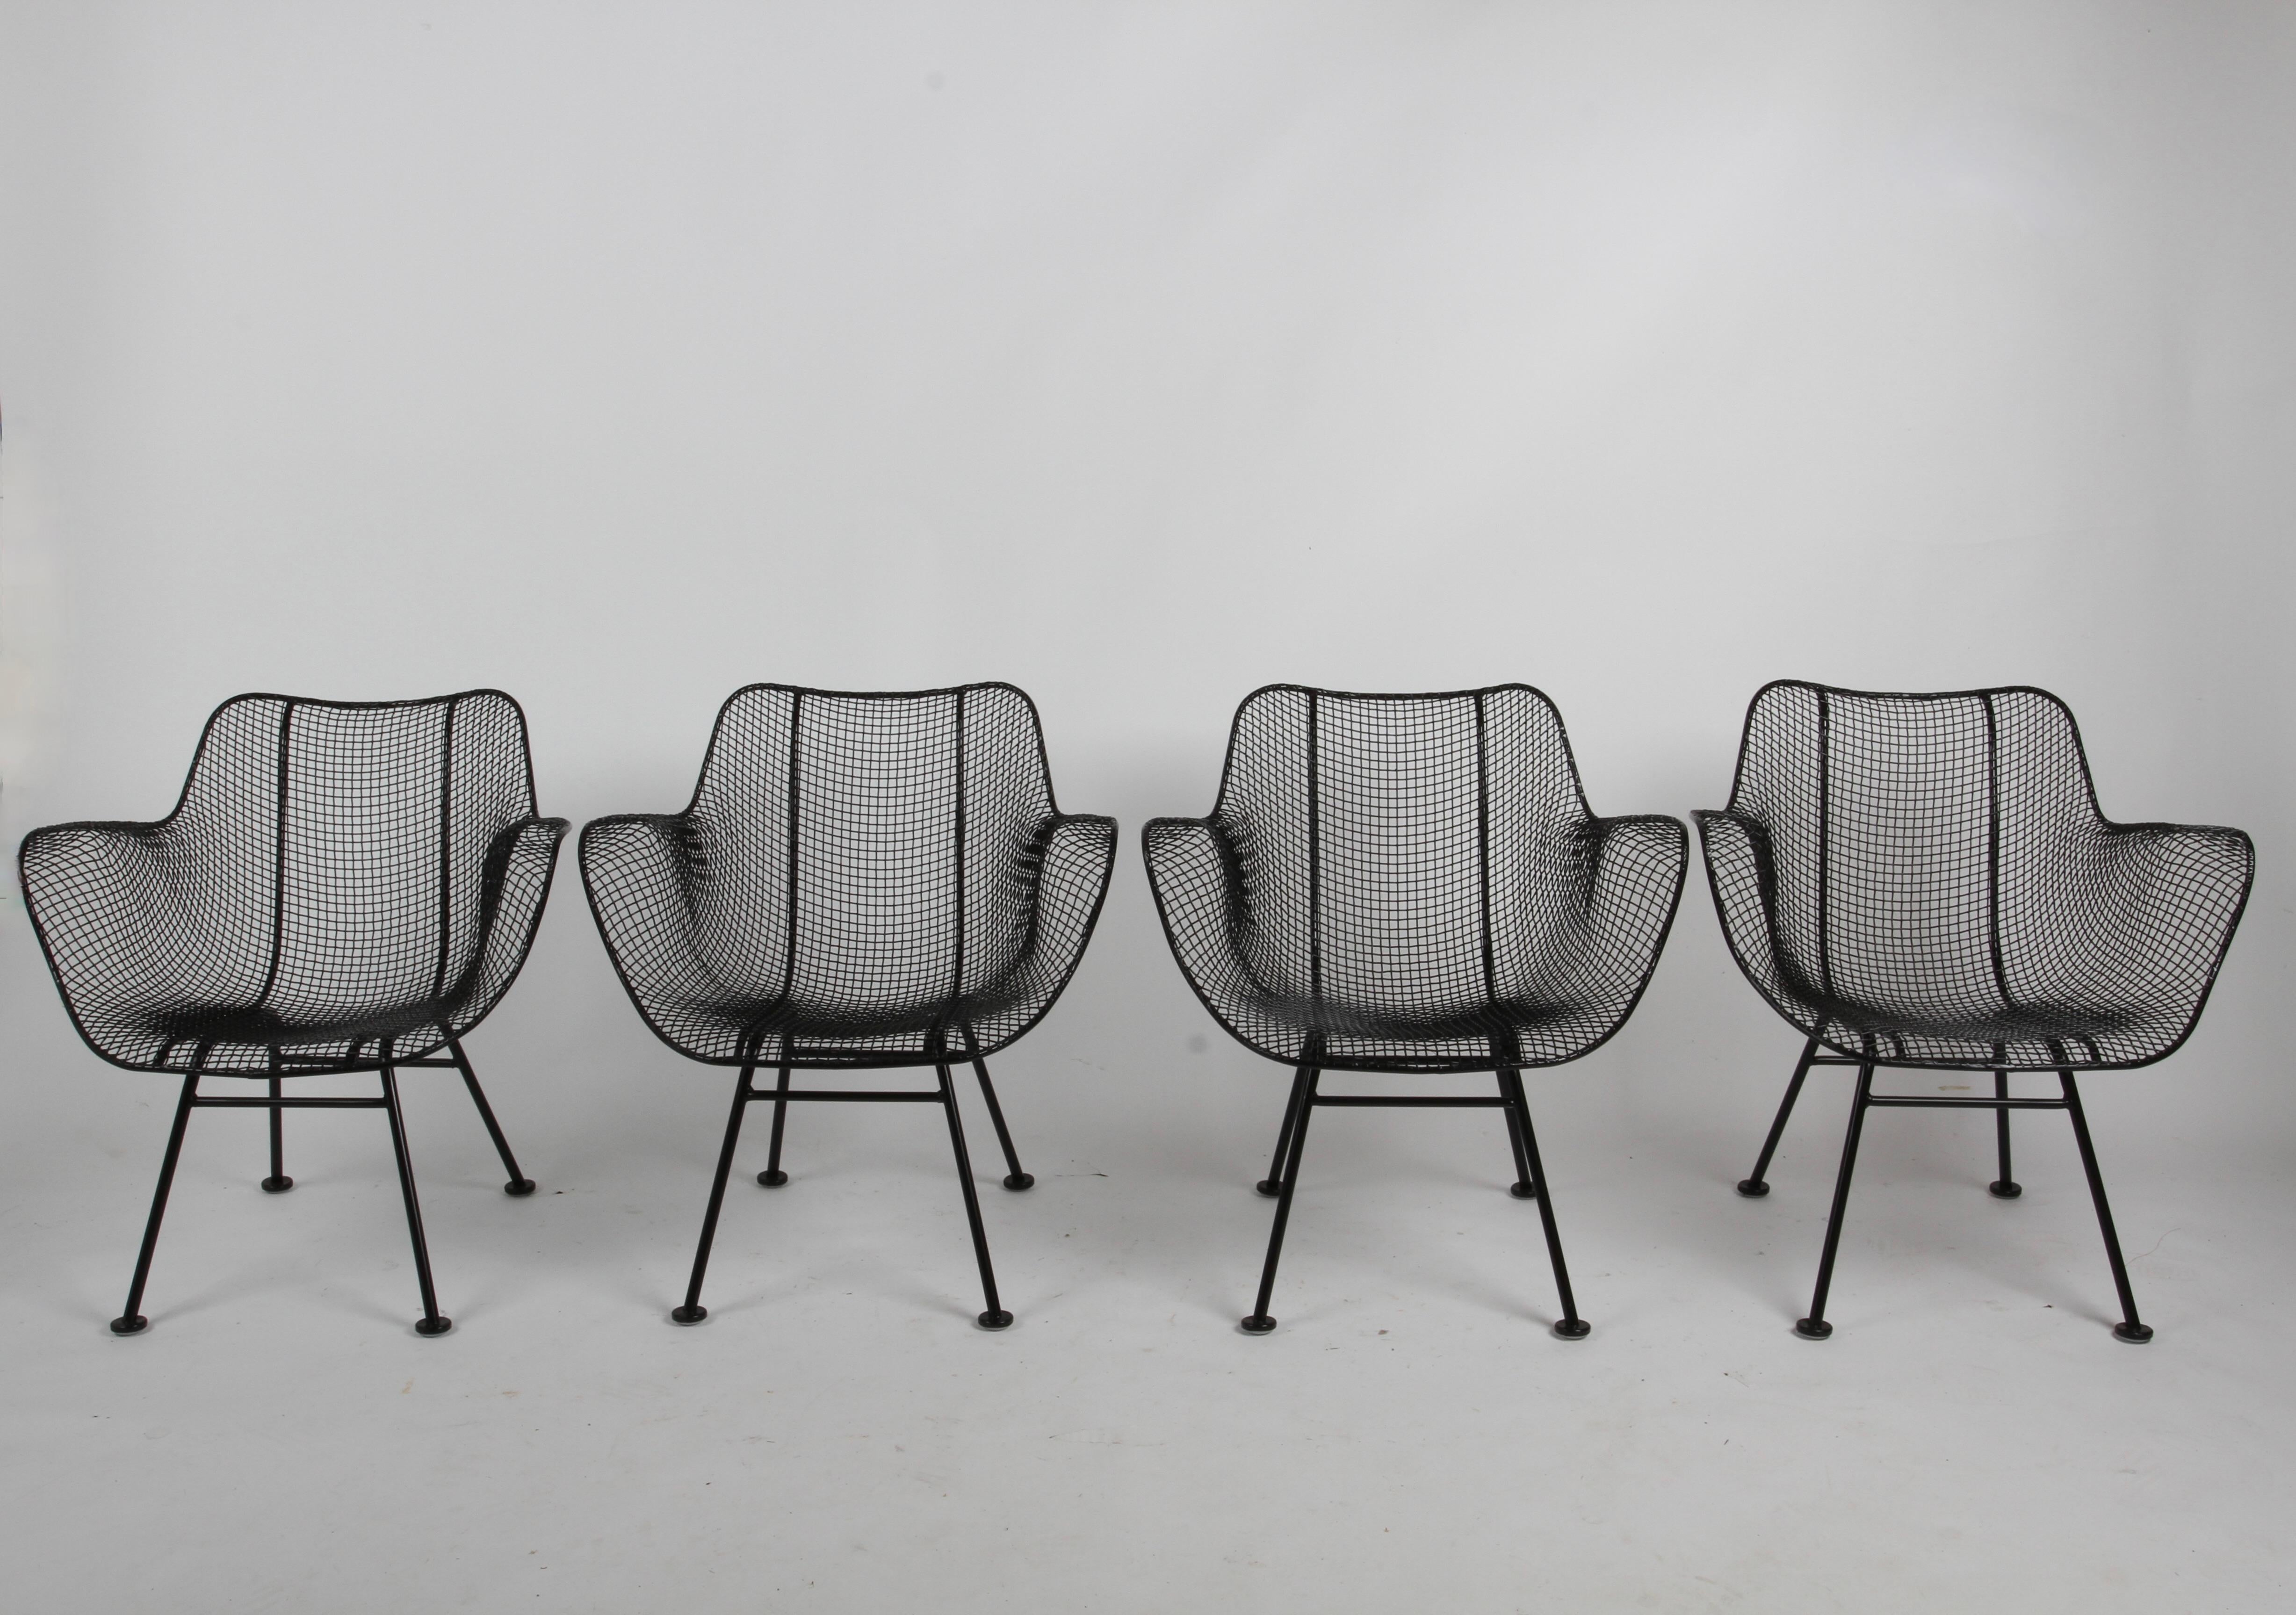 Ensemble nouvellement restauré de quatre fauteuils de patio iconiques Russell Woodard, de la ligne Sculptura des années 1950, en grillage métallique, de style moderne du milieu du siècle. Il vient juste d'être sablé, trempé dans un inhibiteur de